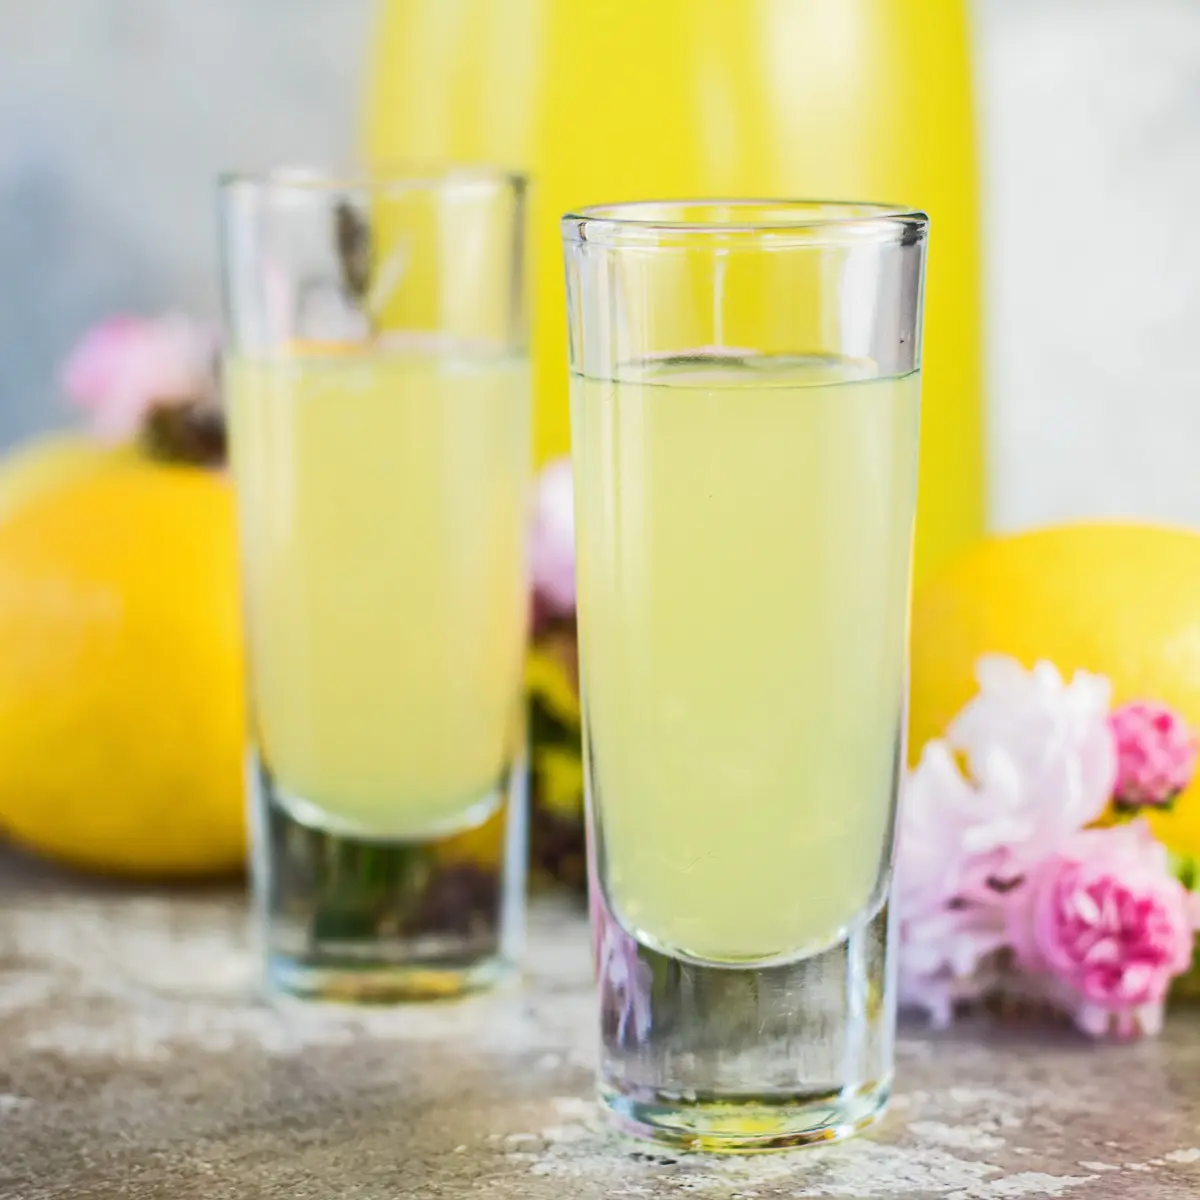 Domaći limunski poslužen u malim čašama s voćem i ružičastim cvjetovima u pozadini.